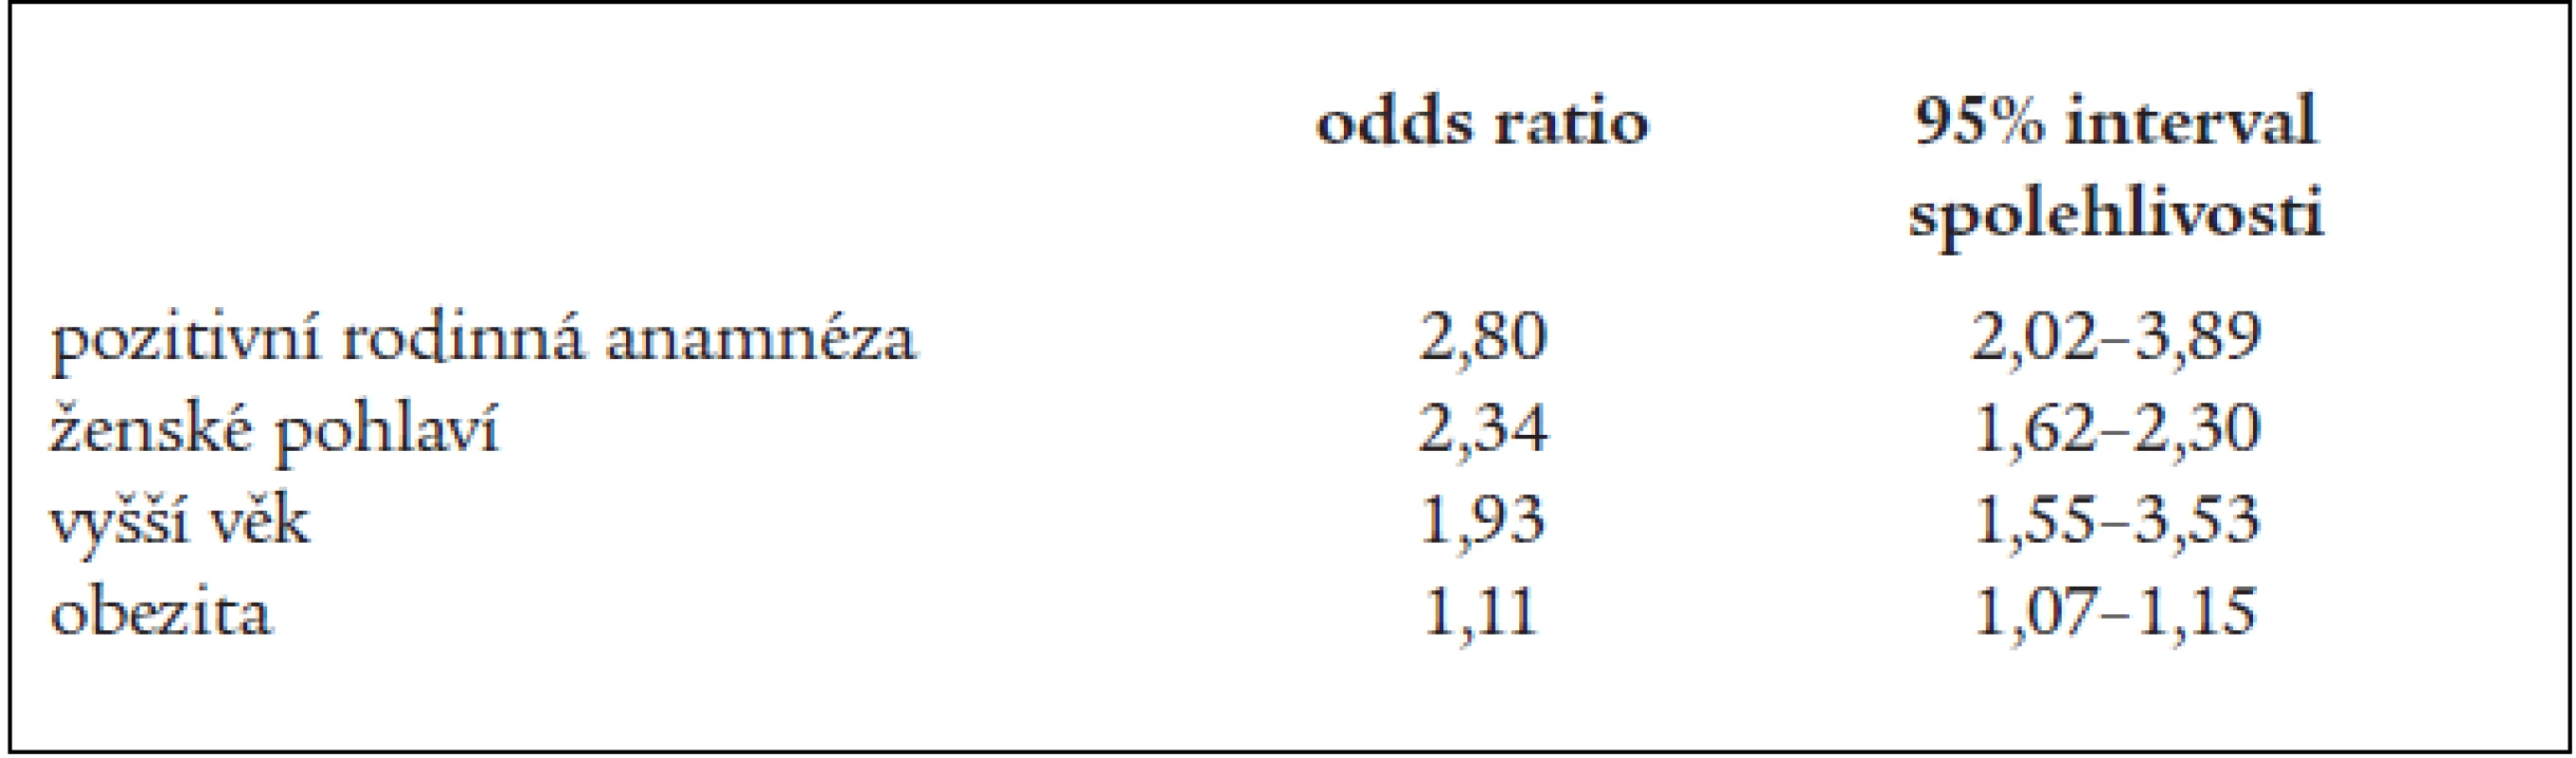 Hodnocení rizikových faktorů středně těžké a těžké chronické žilní nedostatečnosti podle poměru šancí (odds ratio) [5].